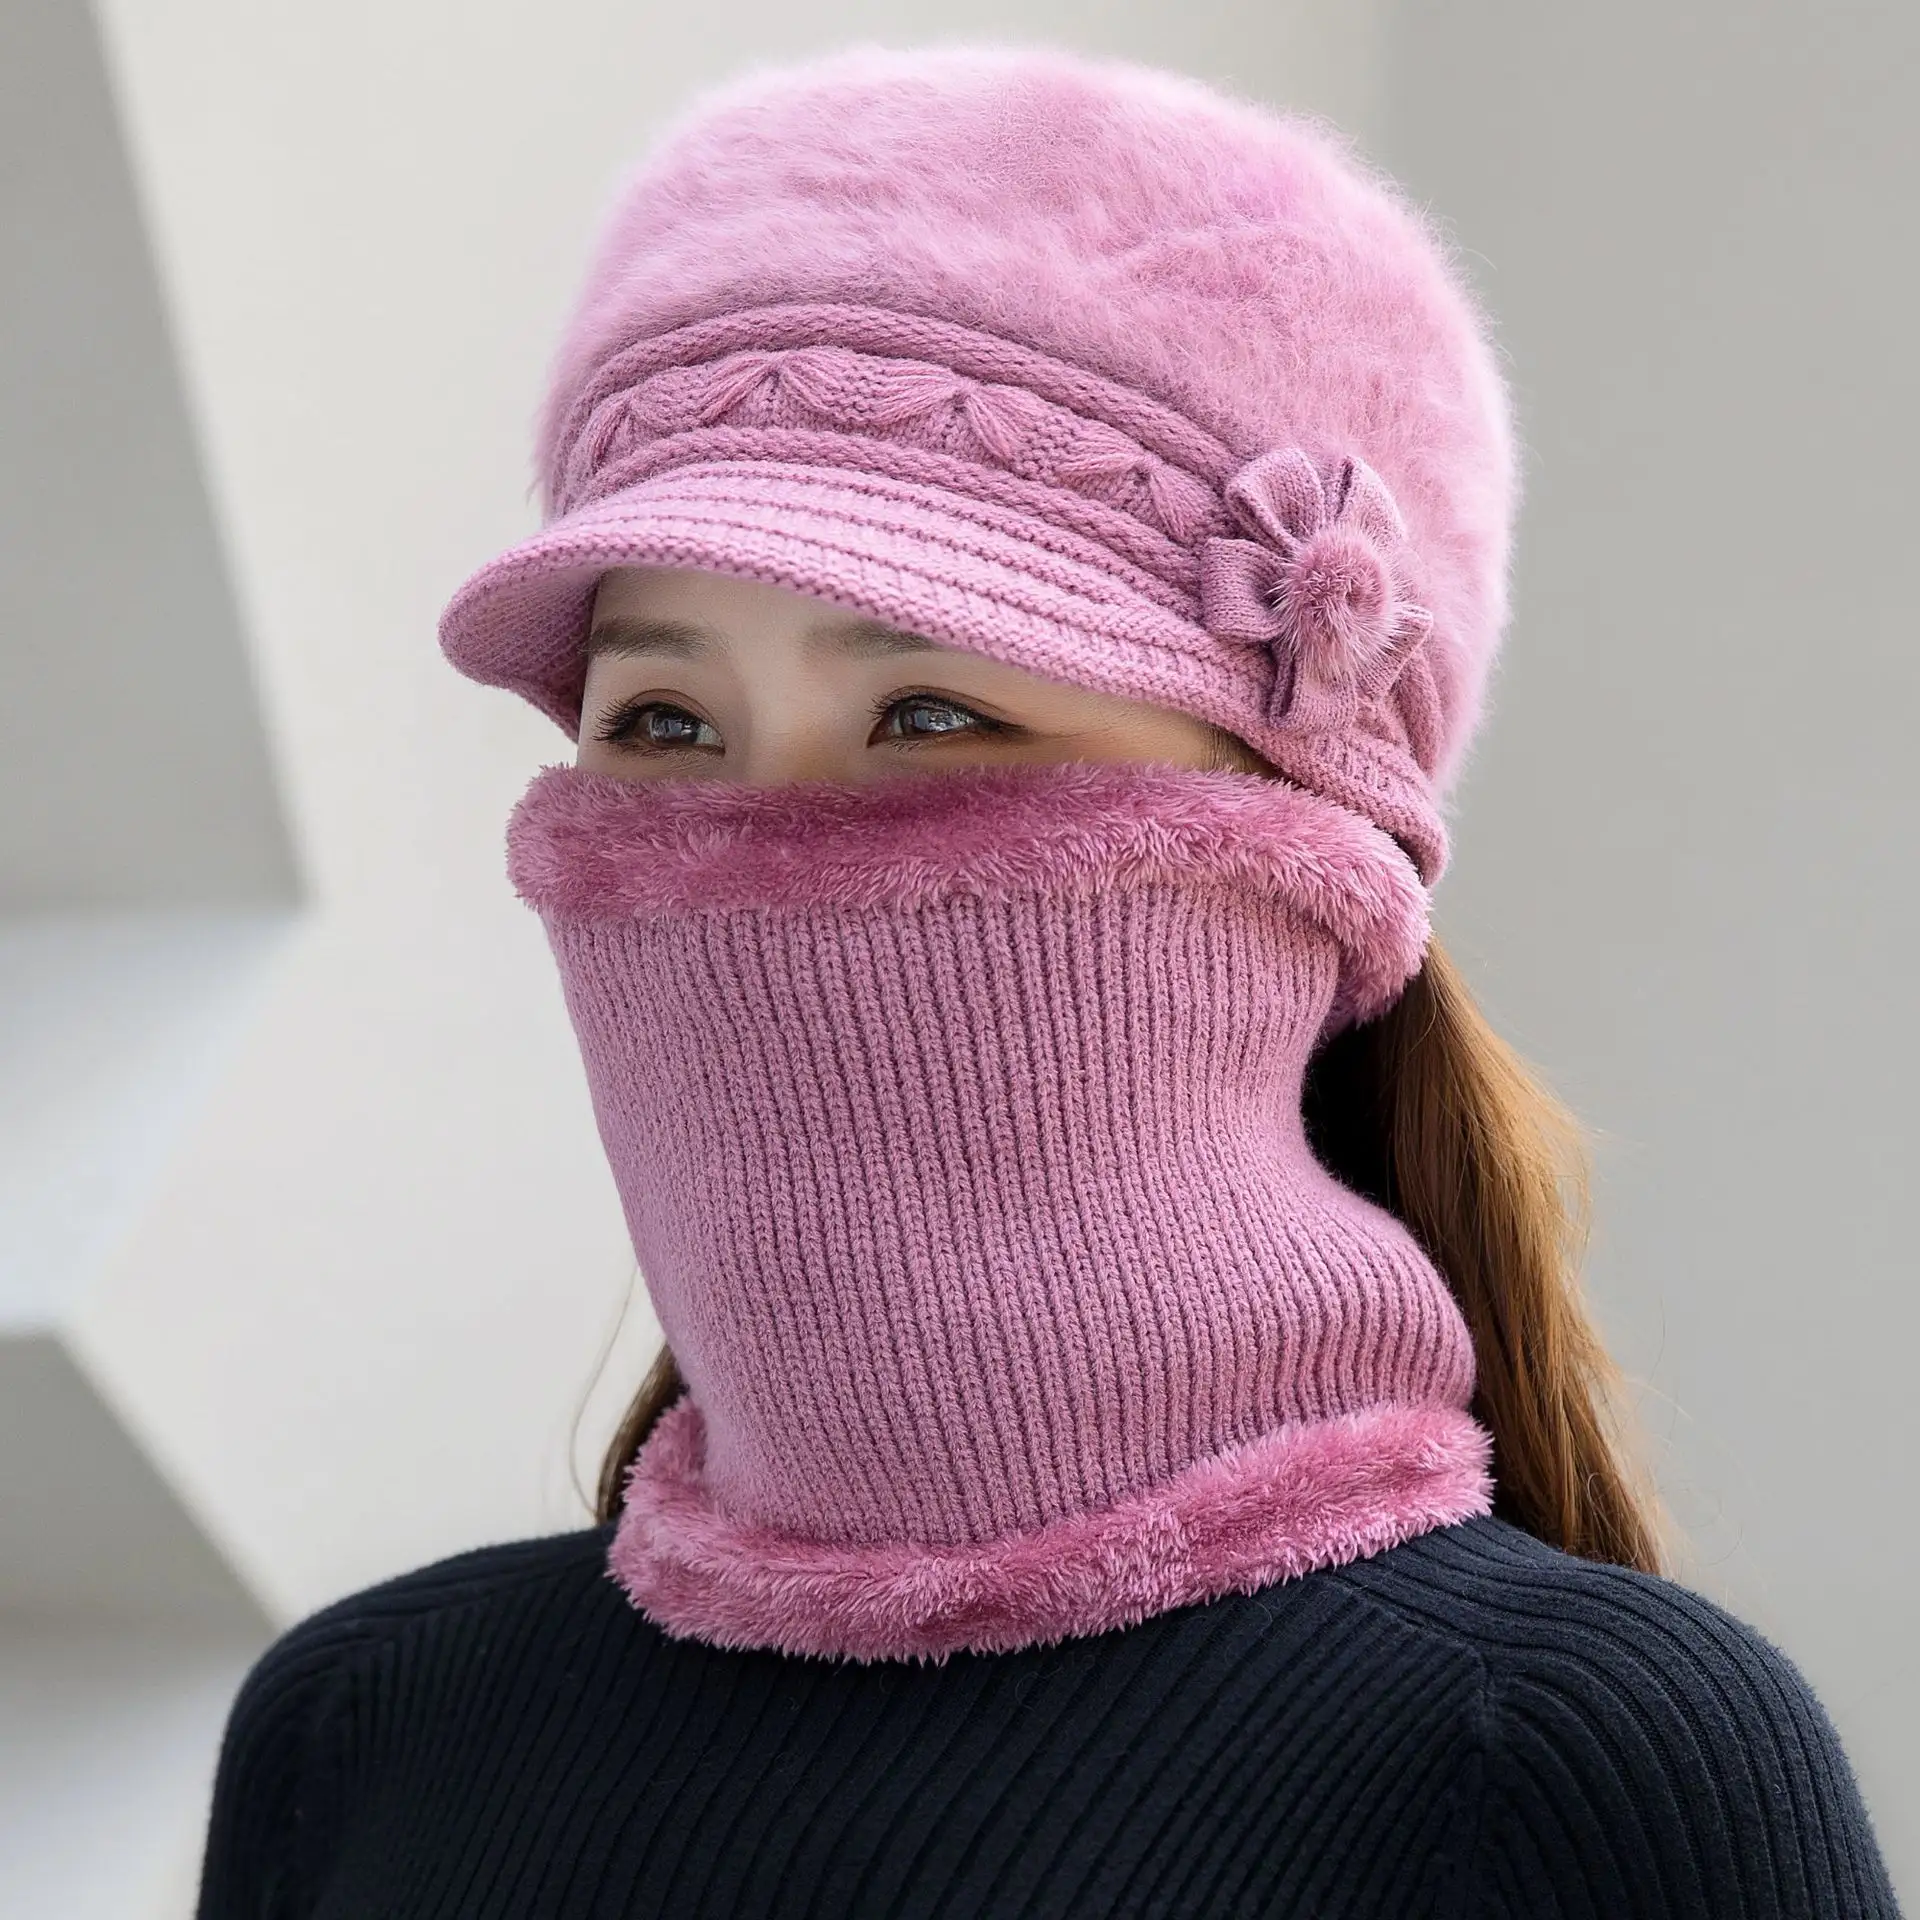 Las últimas mujeres cálidas a prueba de frío terciopelo grueso invierno tejido tubo cara cuello bufanda gorro conjunto